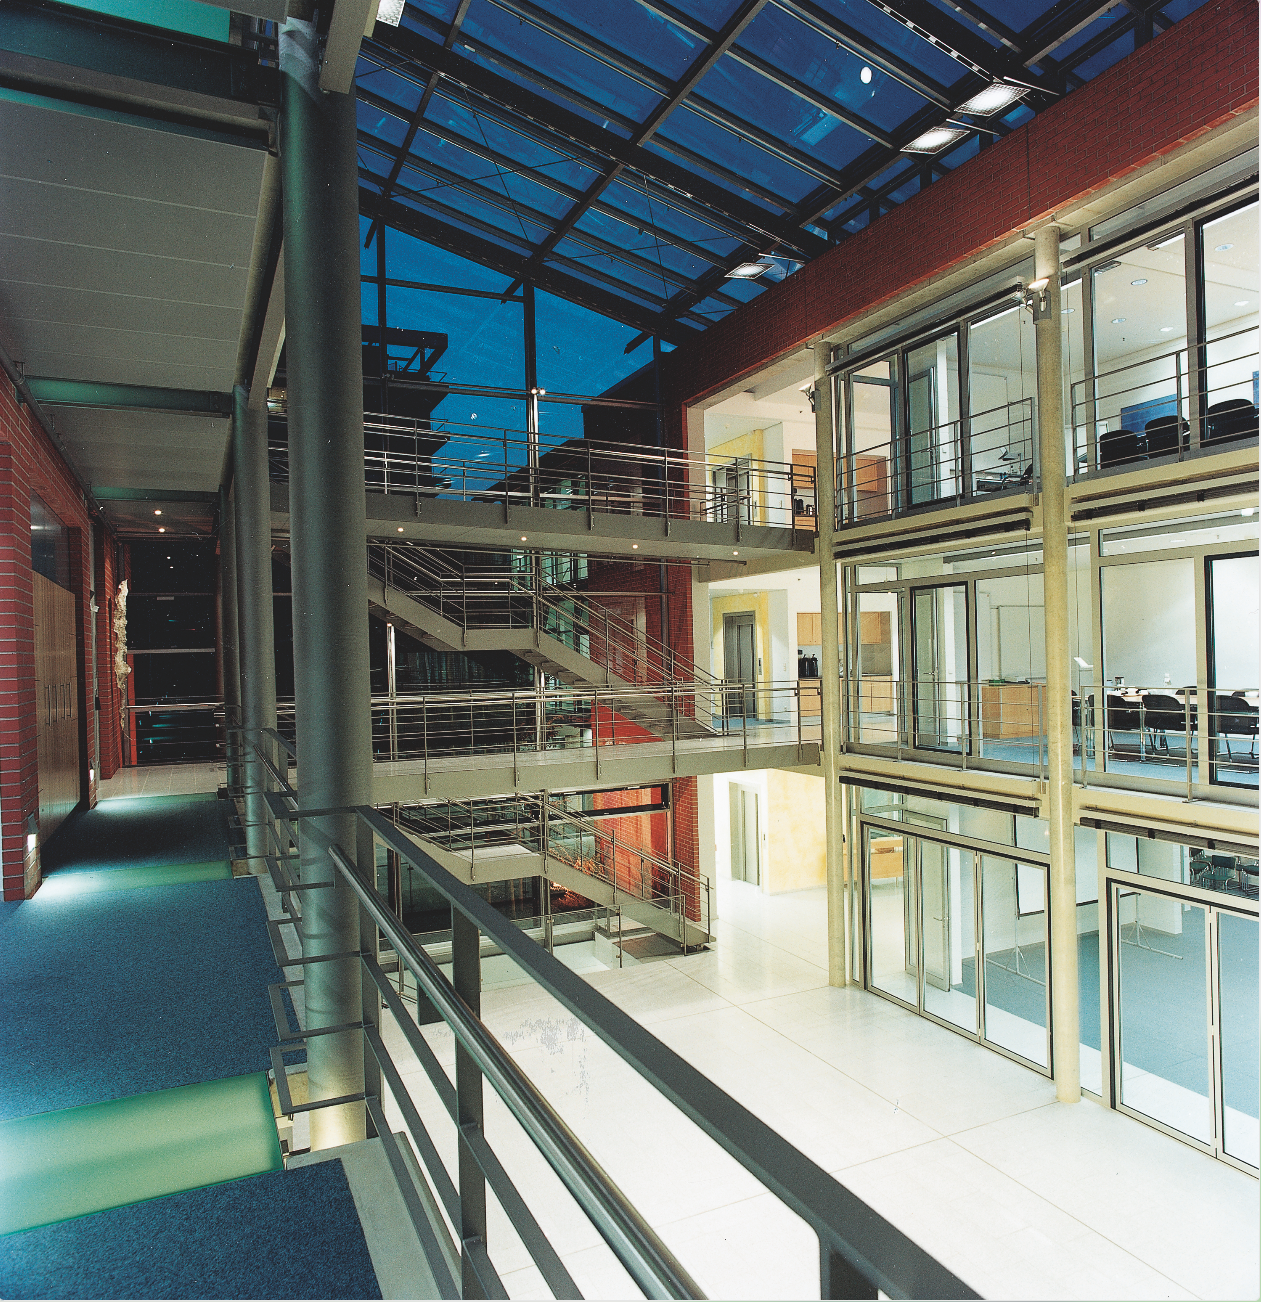 1999’da açılan, içinde Ar-Ge laboratuvarlarının bulunduğu biyoteknoloji merkezinin iç görünümü